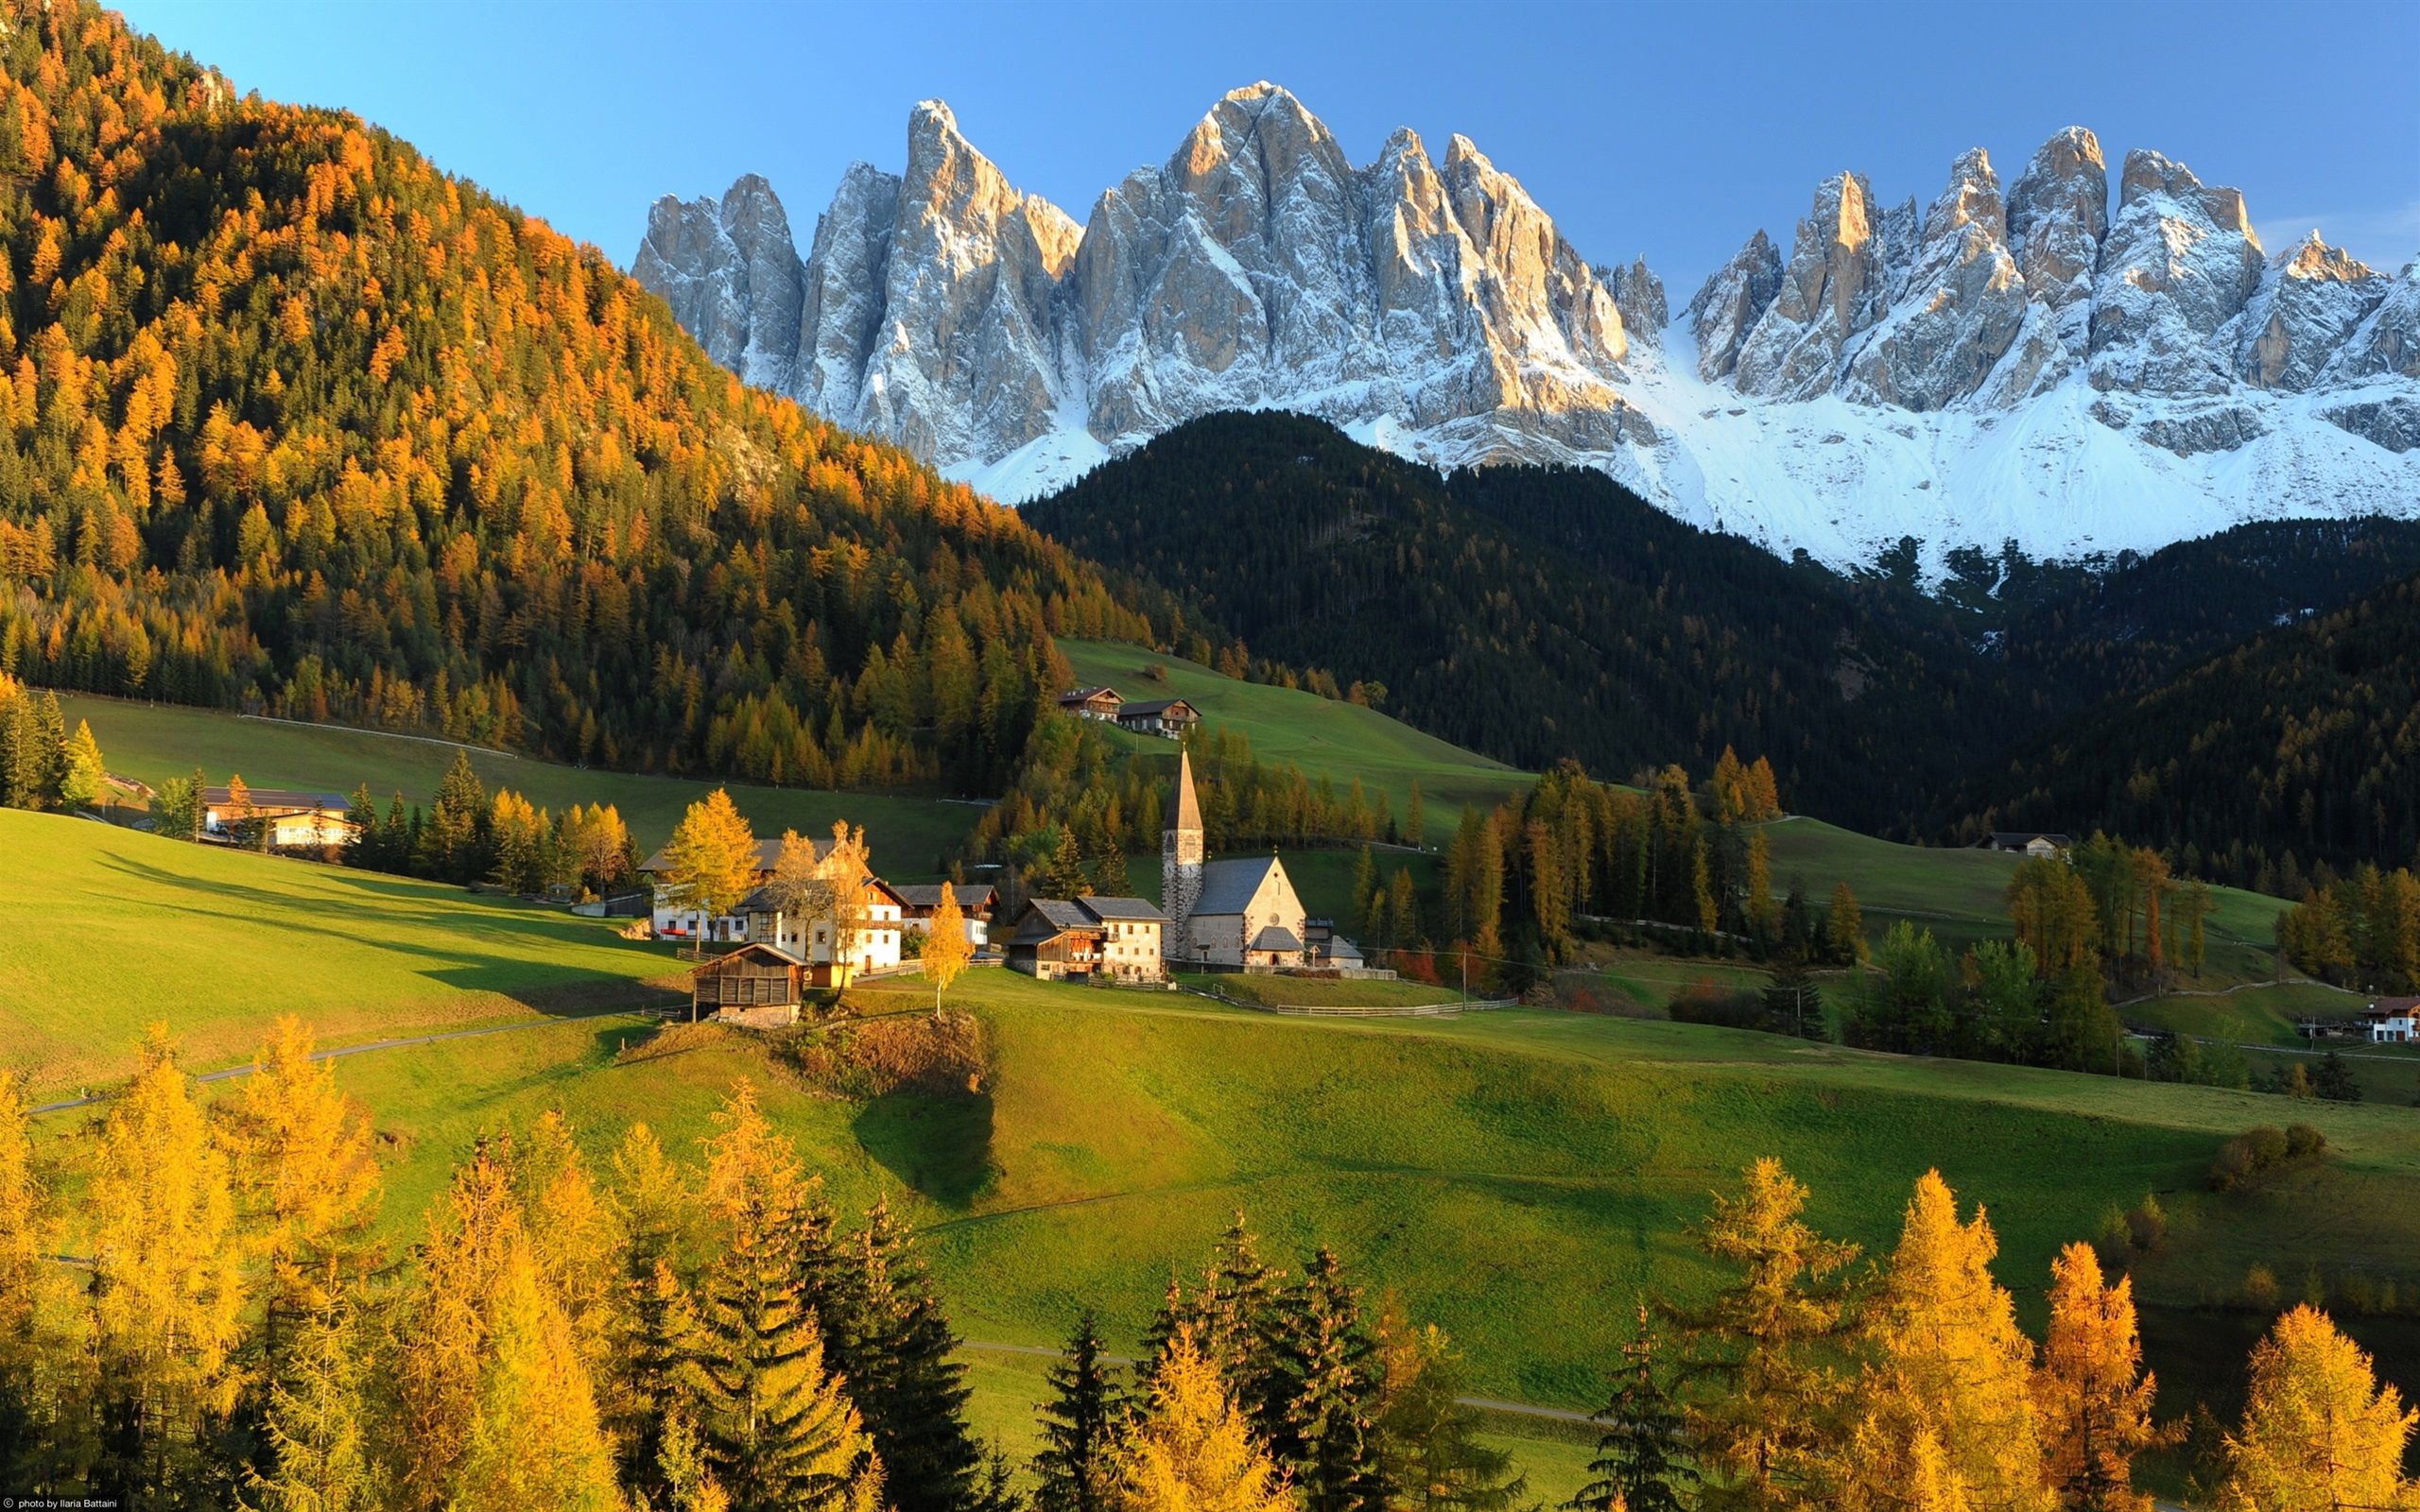  Schweiz Hintergrundbild 2560x1600. Schweiz, die Alpen, Berge, Hügel, Haus, Herbst 2560x1600 HD Hintergrundbilder, HD, Bild